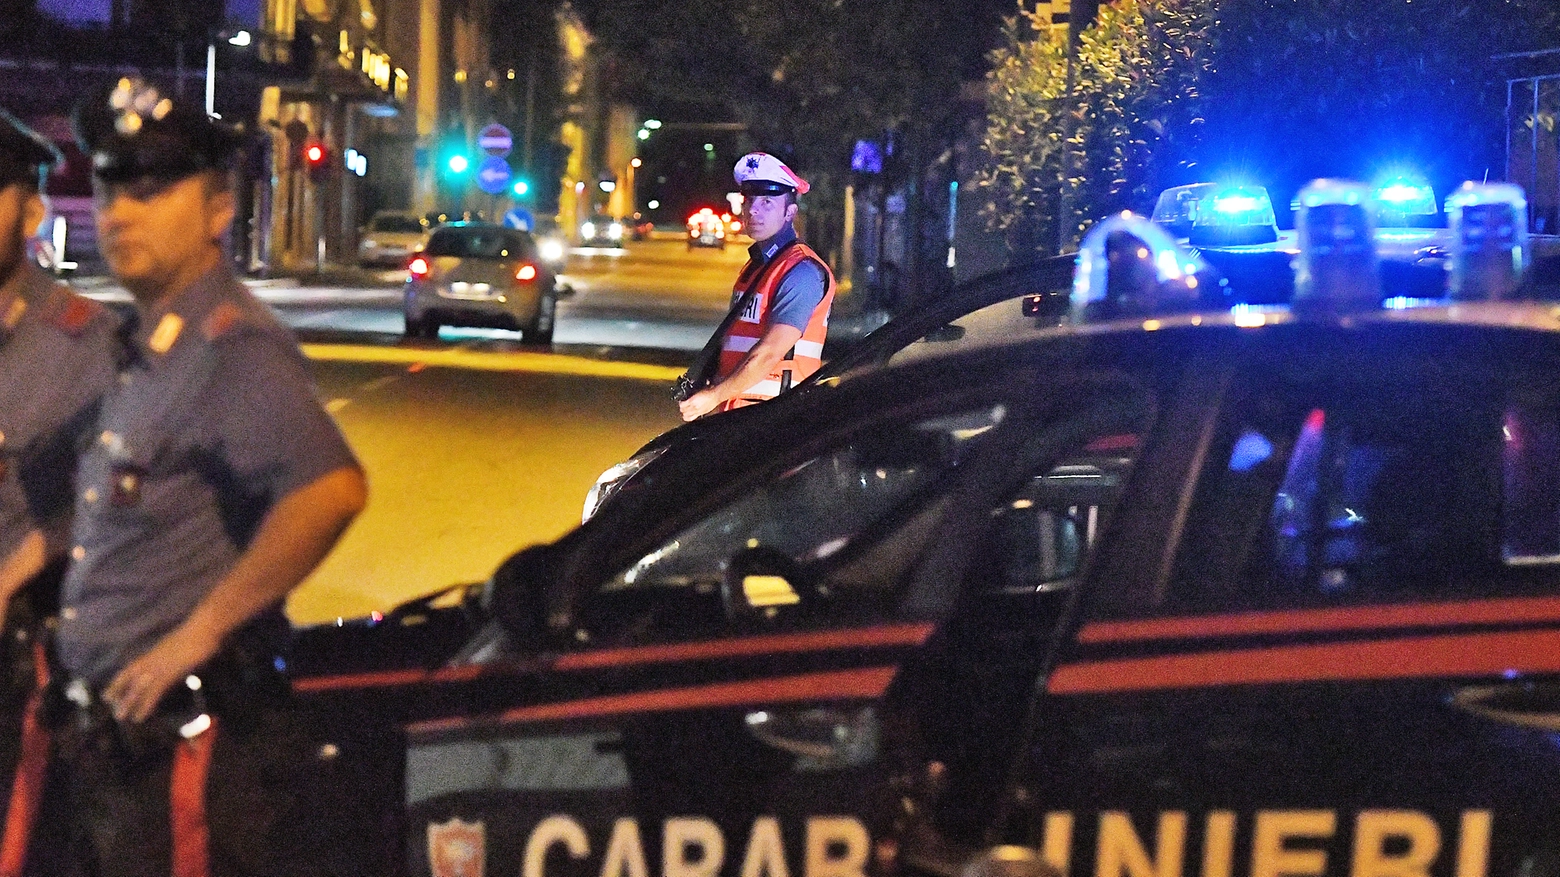 Carabinieri (foto d'archivio)